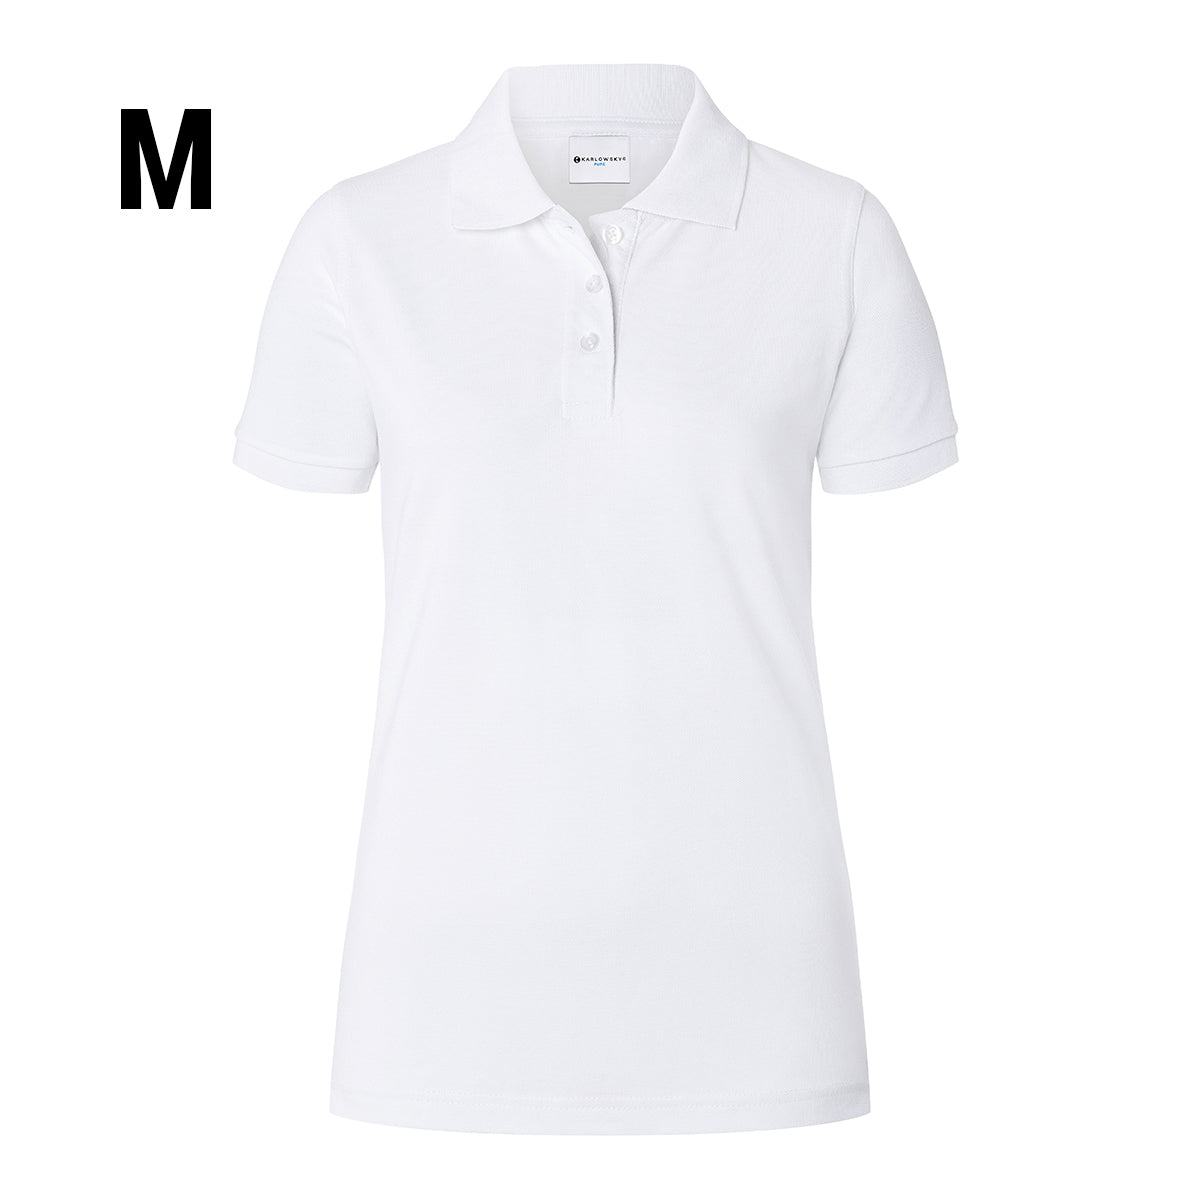 Karlowsky - Arbejdsbeklædning Basic Poloshirt til damer - Hvid - Størrelse: M